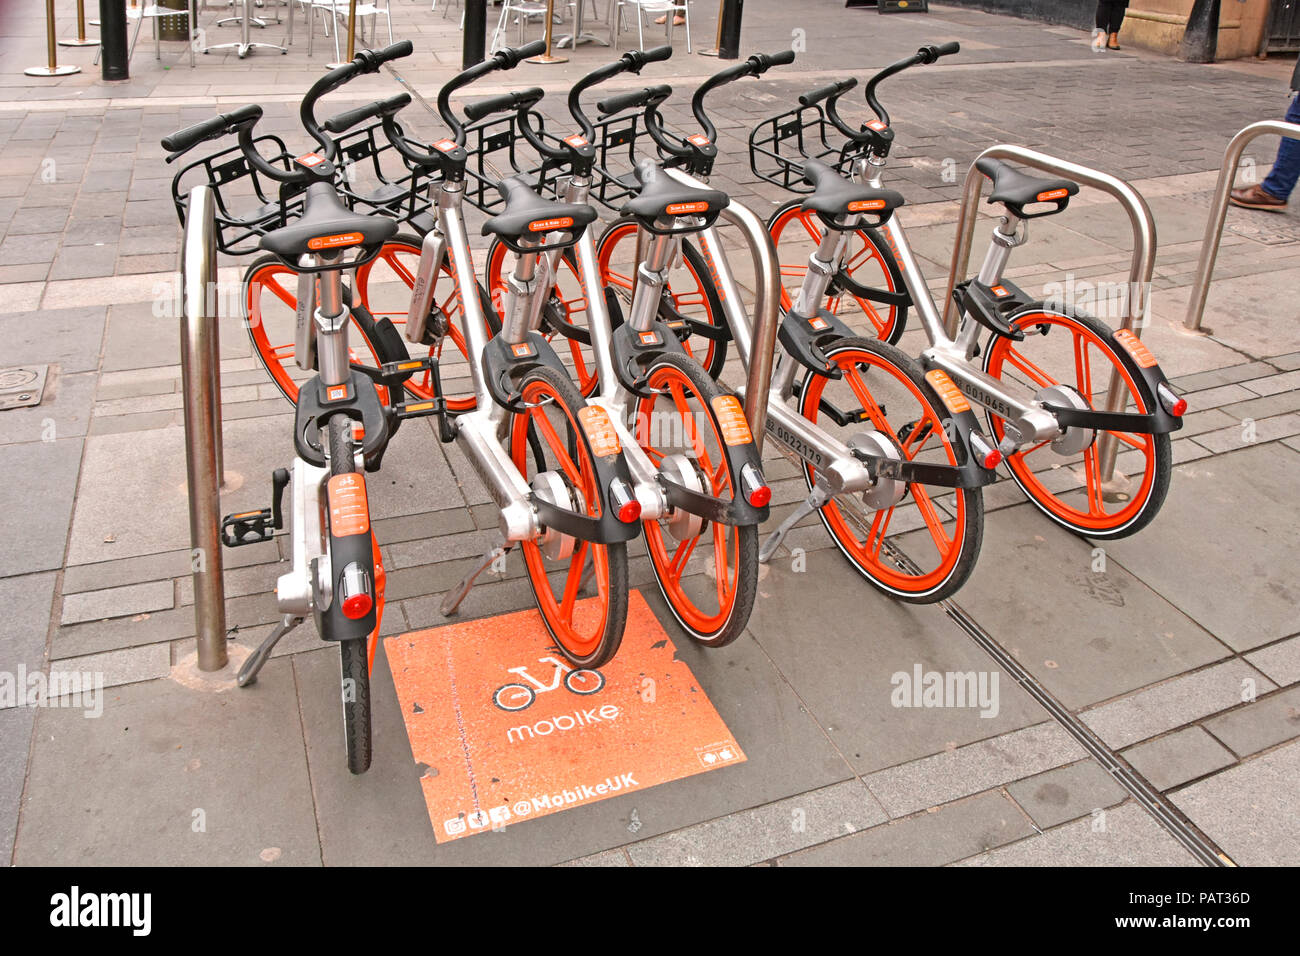 Außerhalb von Newcastle upon Tyne Bahnhof Mobike bevorzugten Parkplatz Lage für Fahrrad Zyklus Fahrradverleih Regelung gesteuert über Phone Apps & Internet GROSSBRITANNIEN Stockfoto